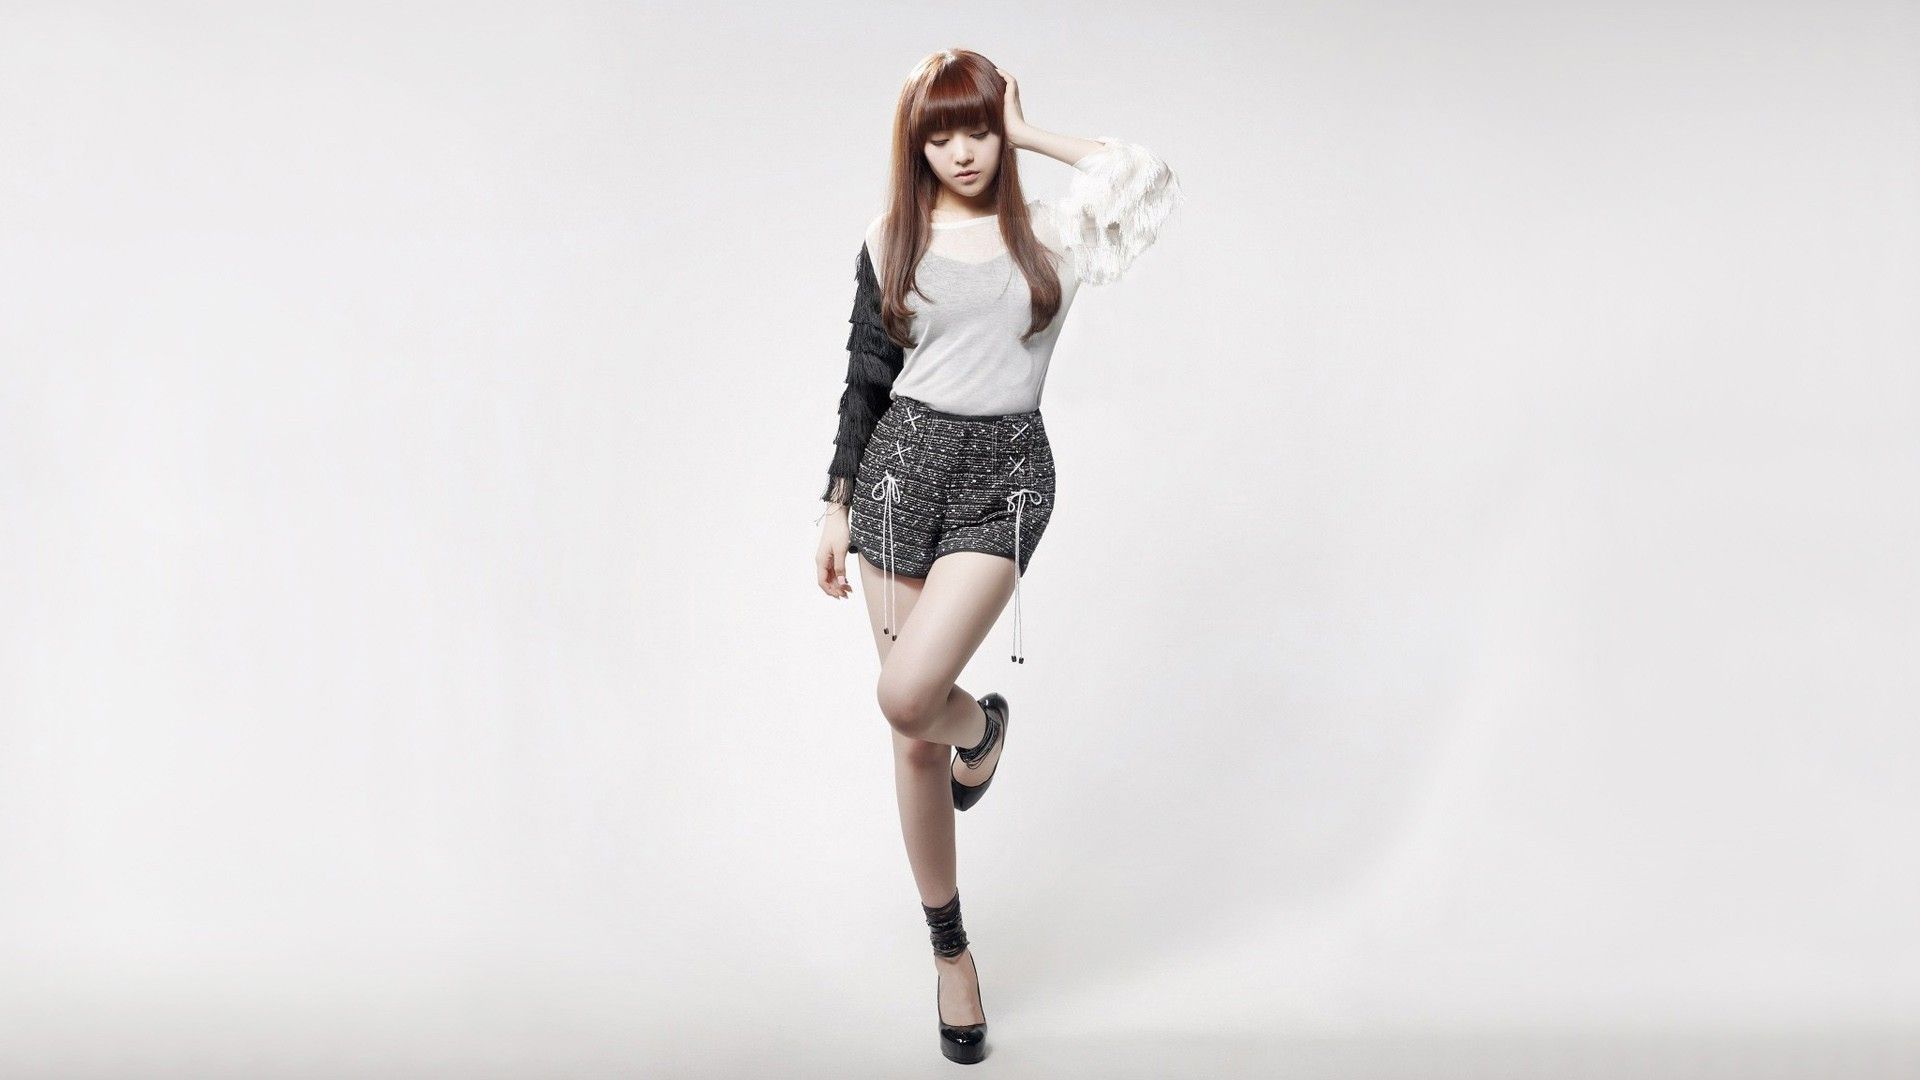 Girls Day K Pop Asian Bang Minah Korean Women Singer